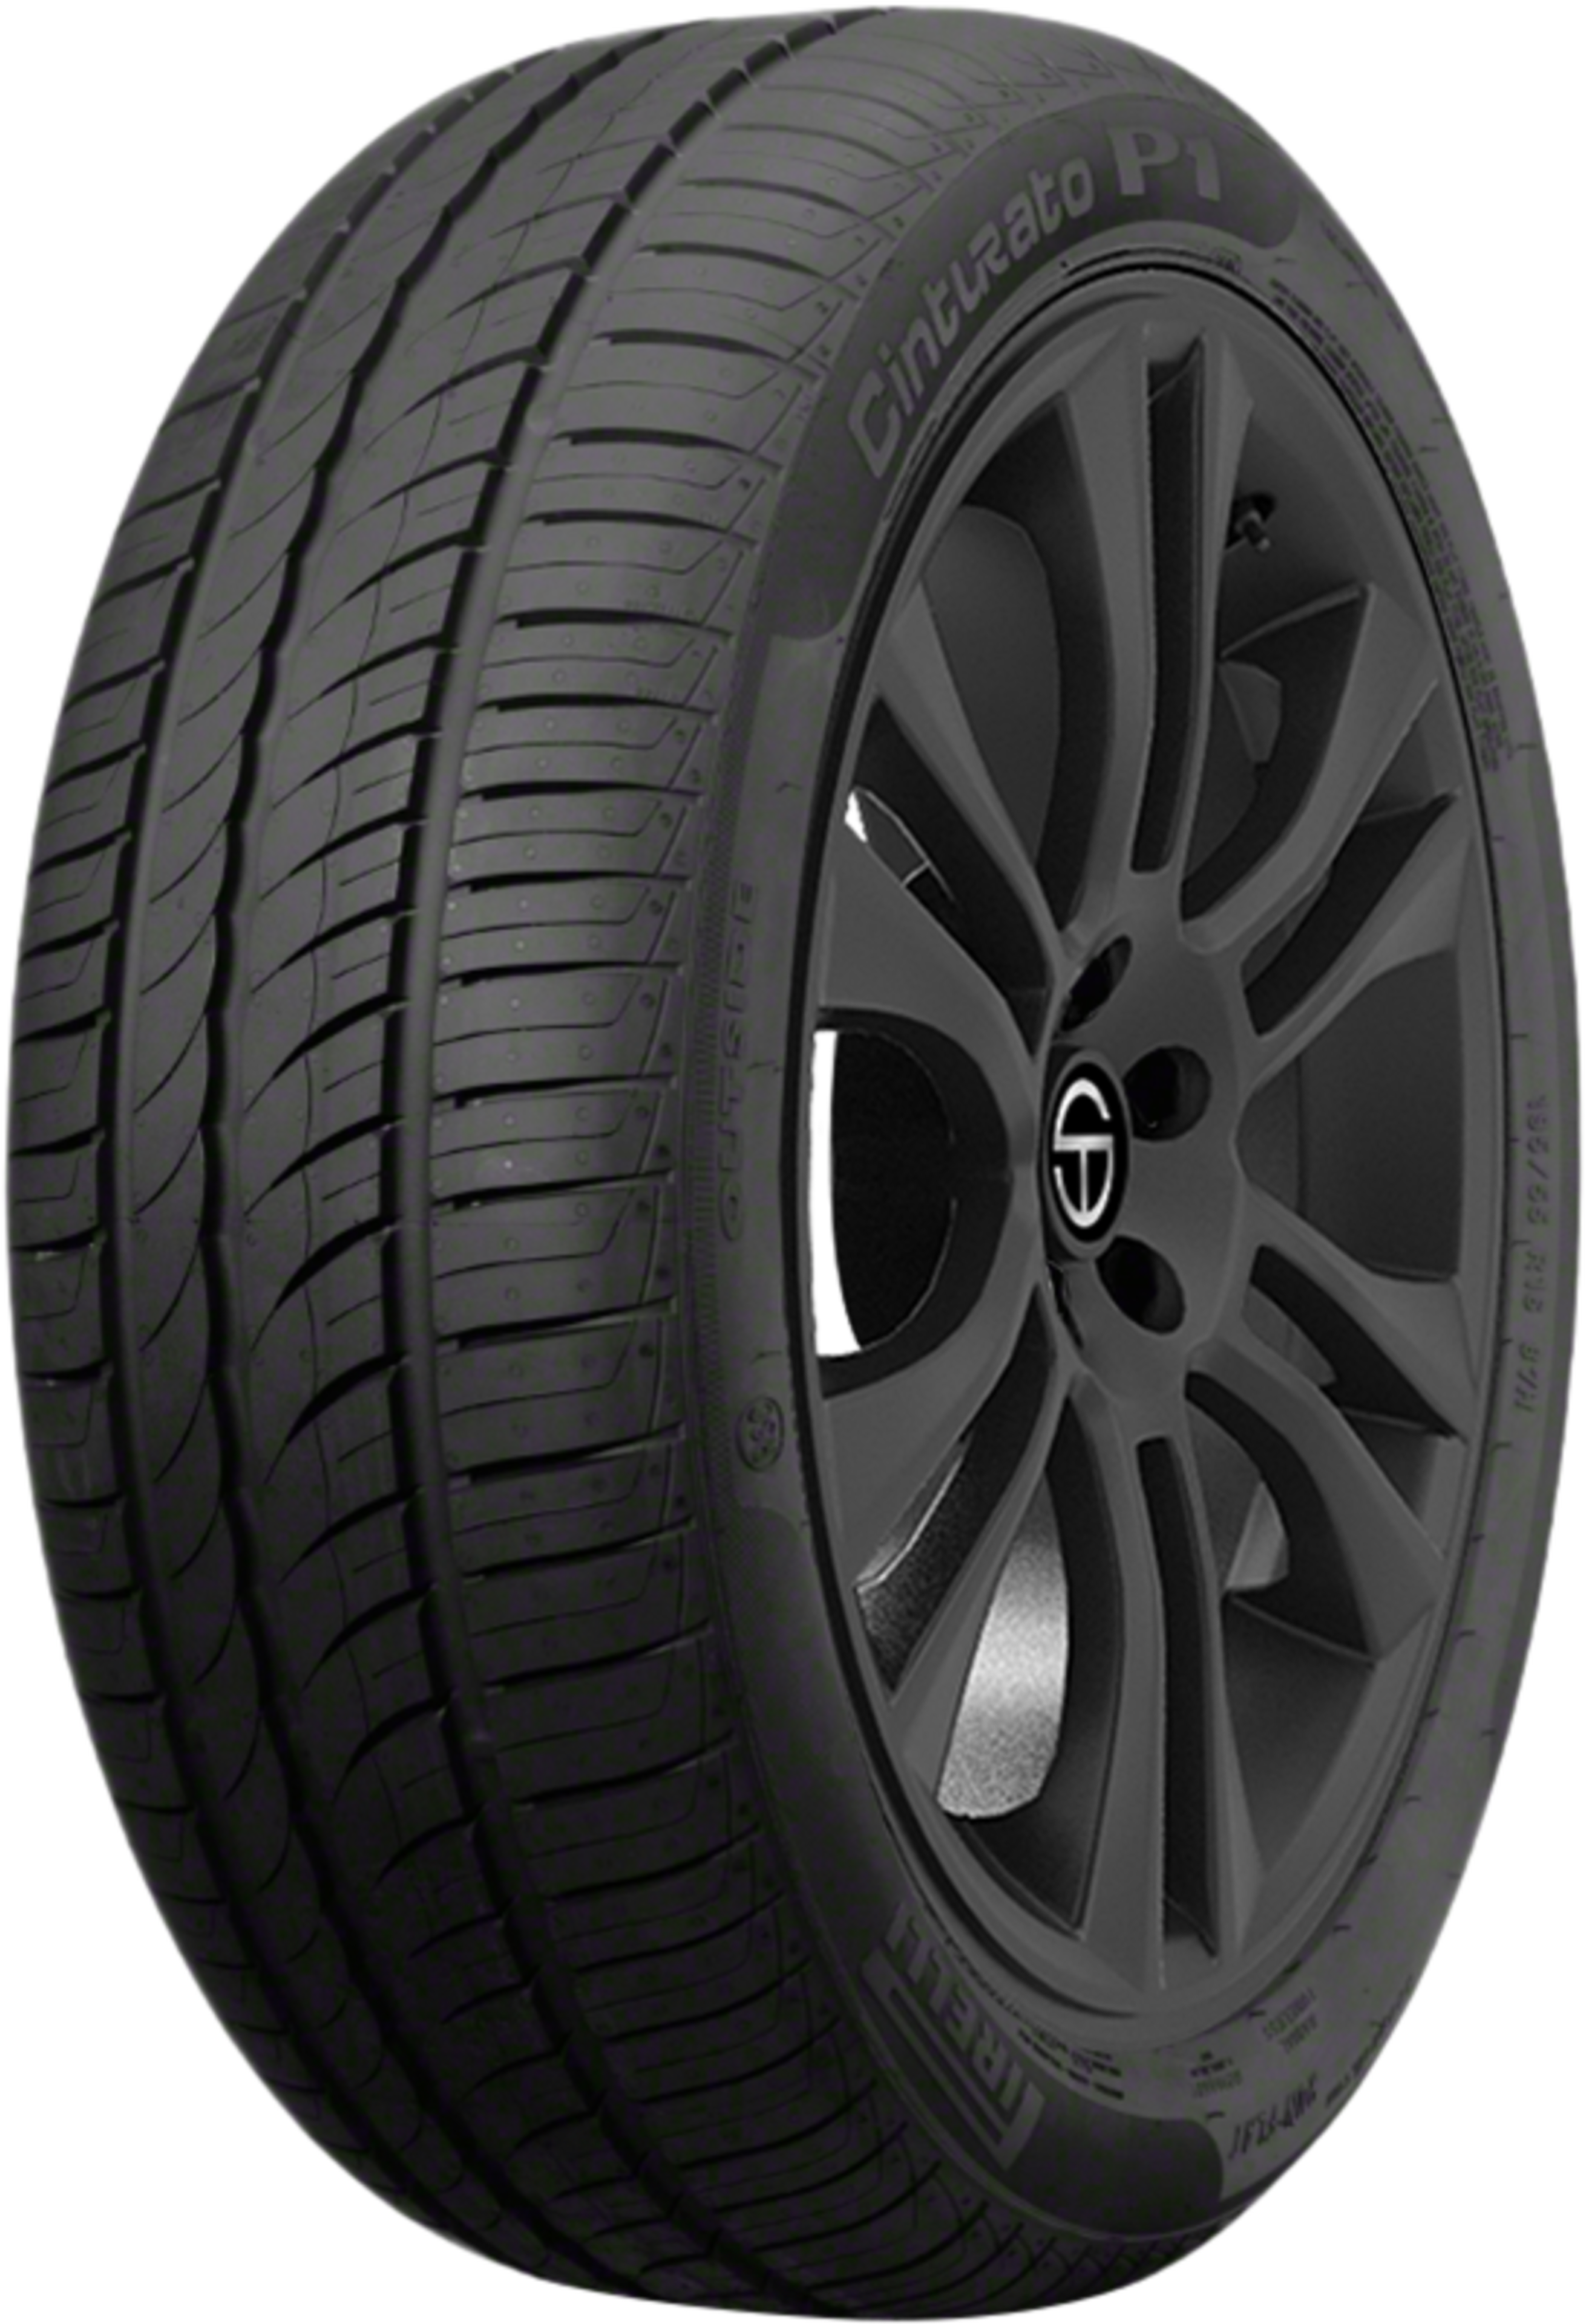 voltereta comodidad proteína Buy Pirelli Cinturato P1 Tires Online | SimpleTire